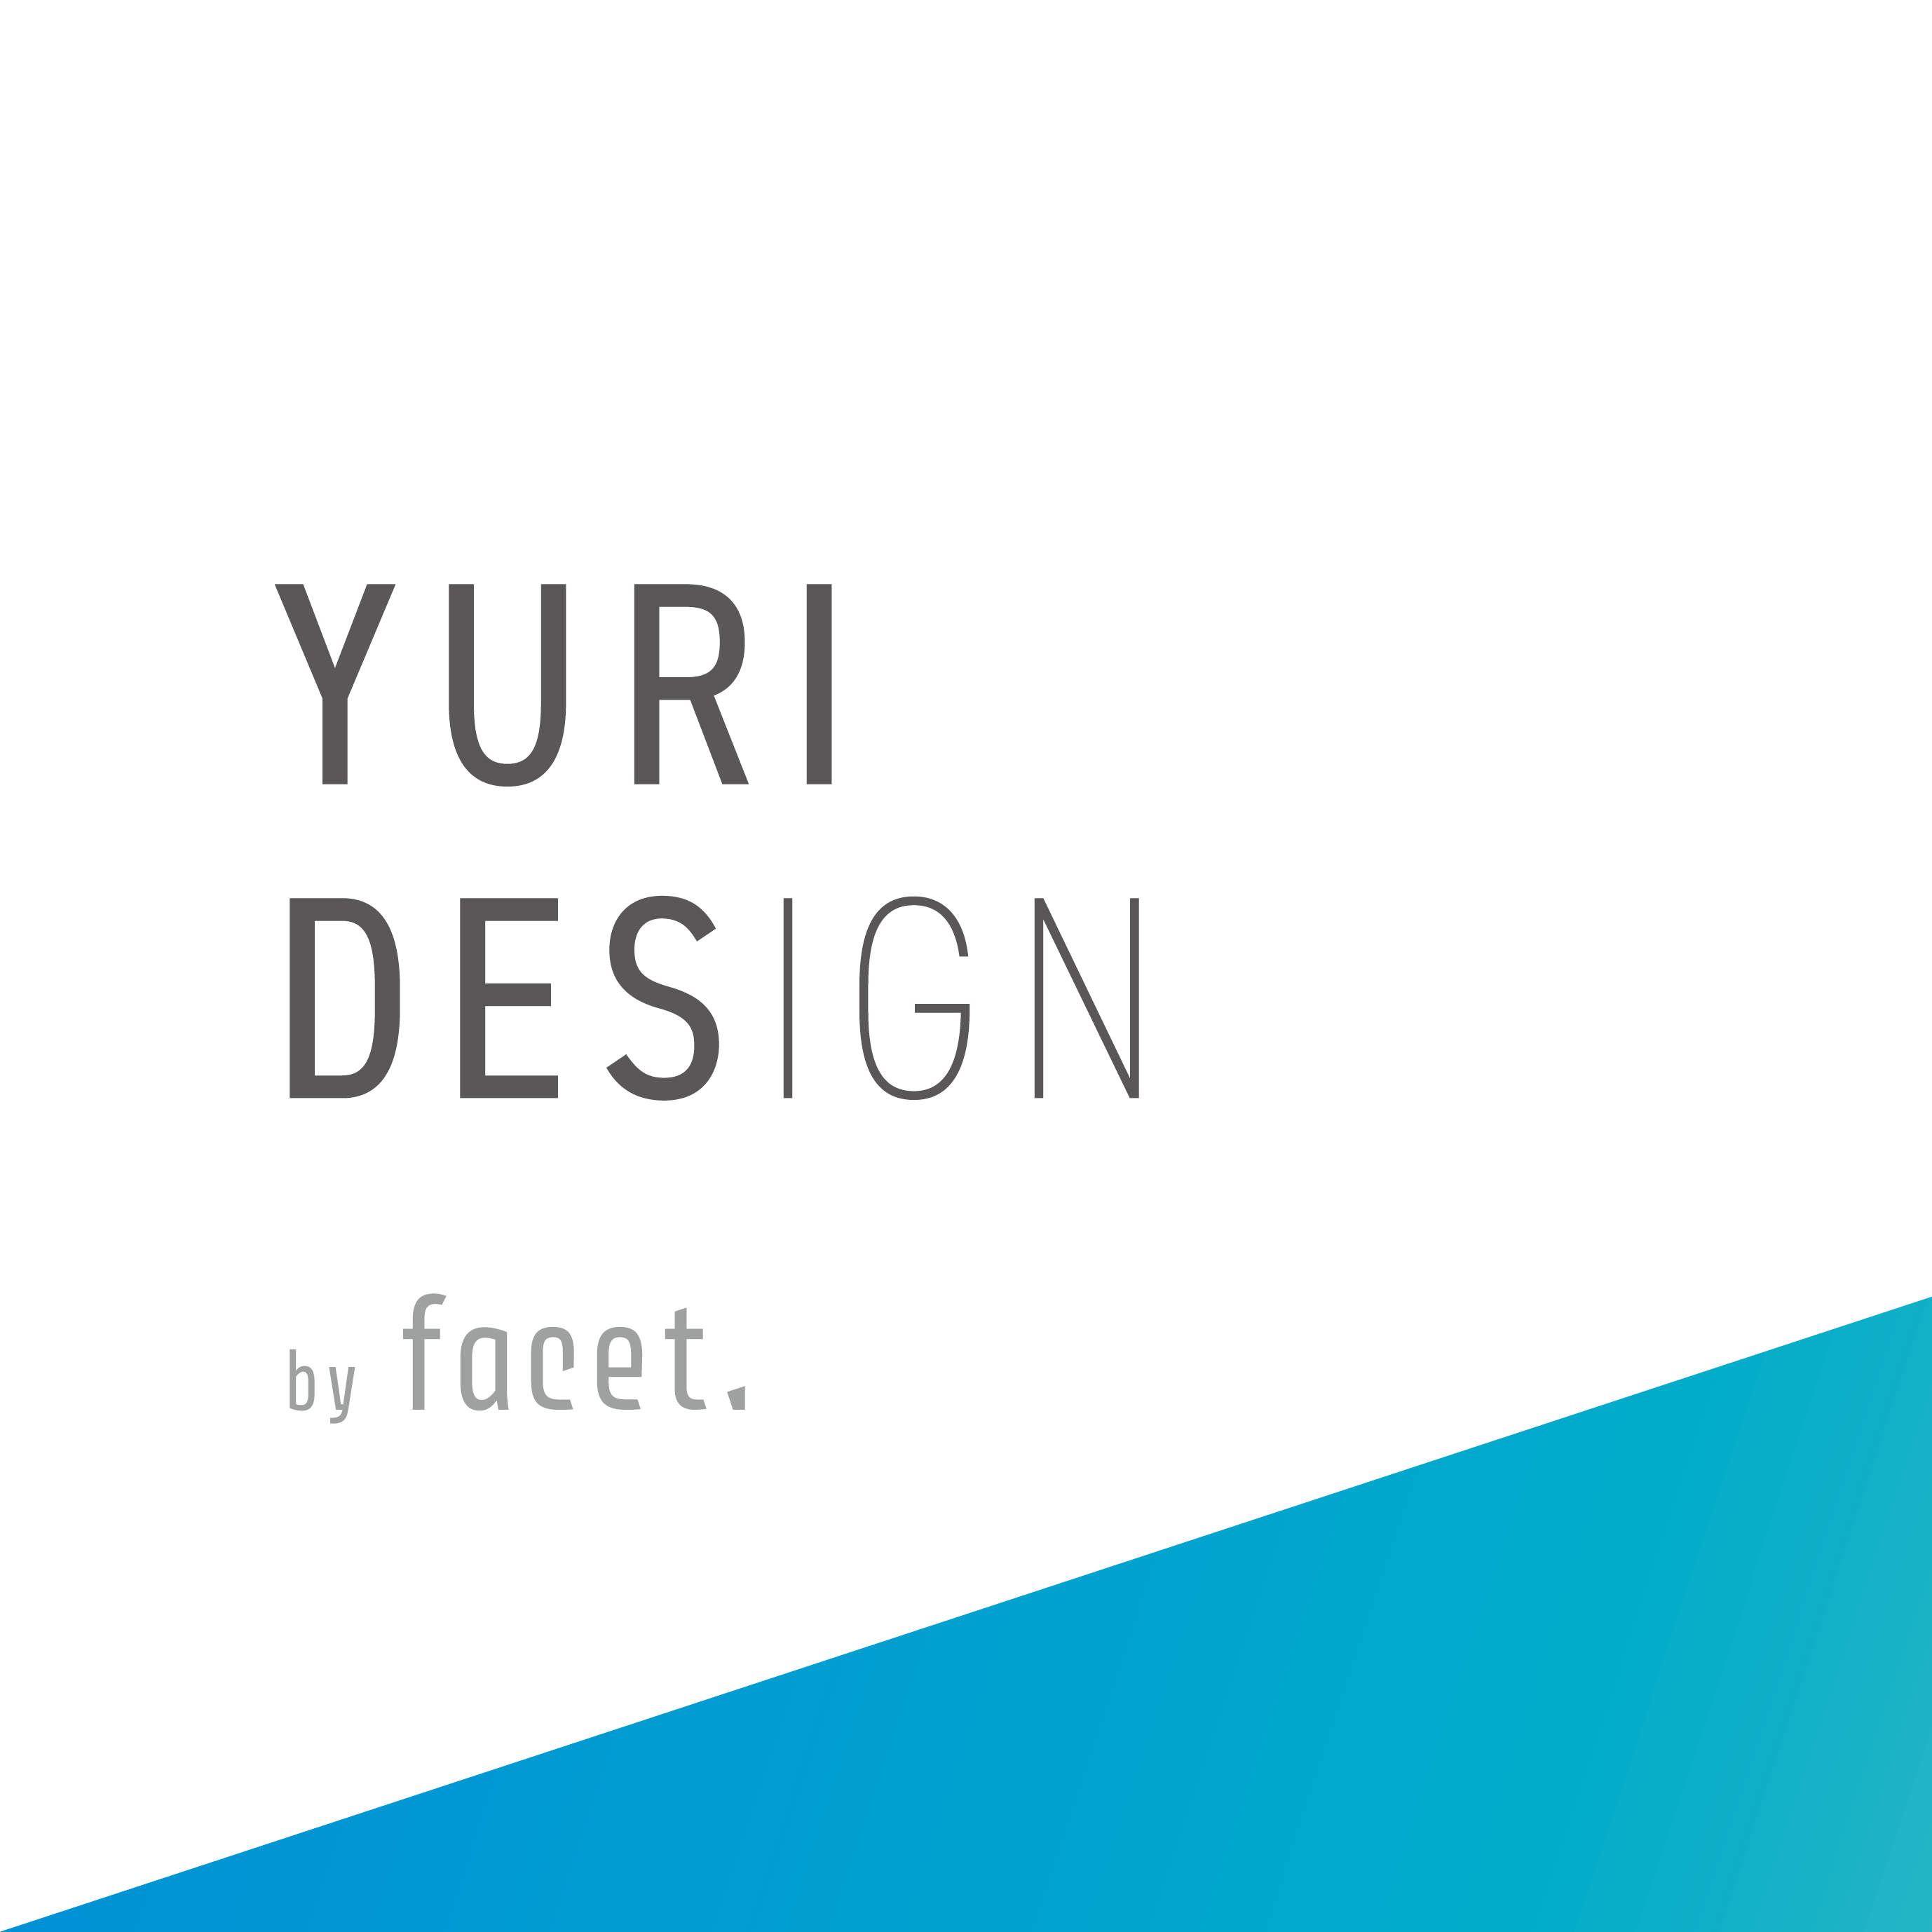 yurides profile image